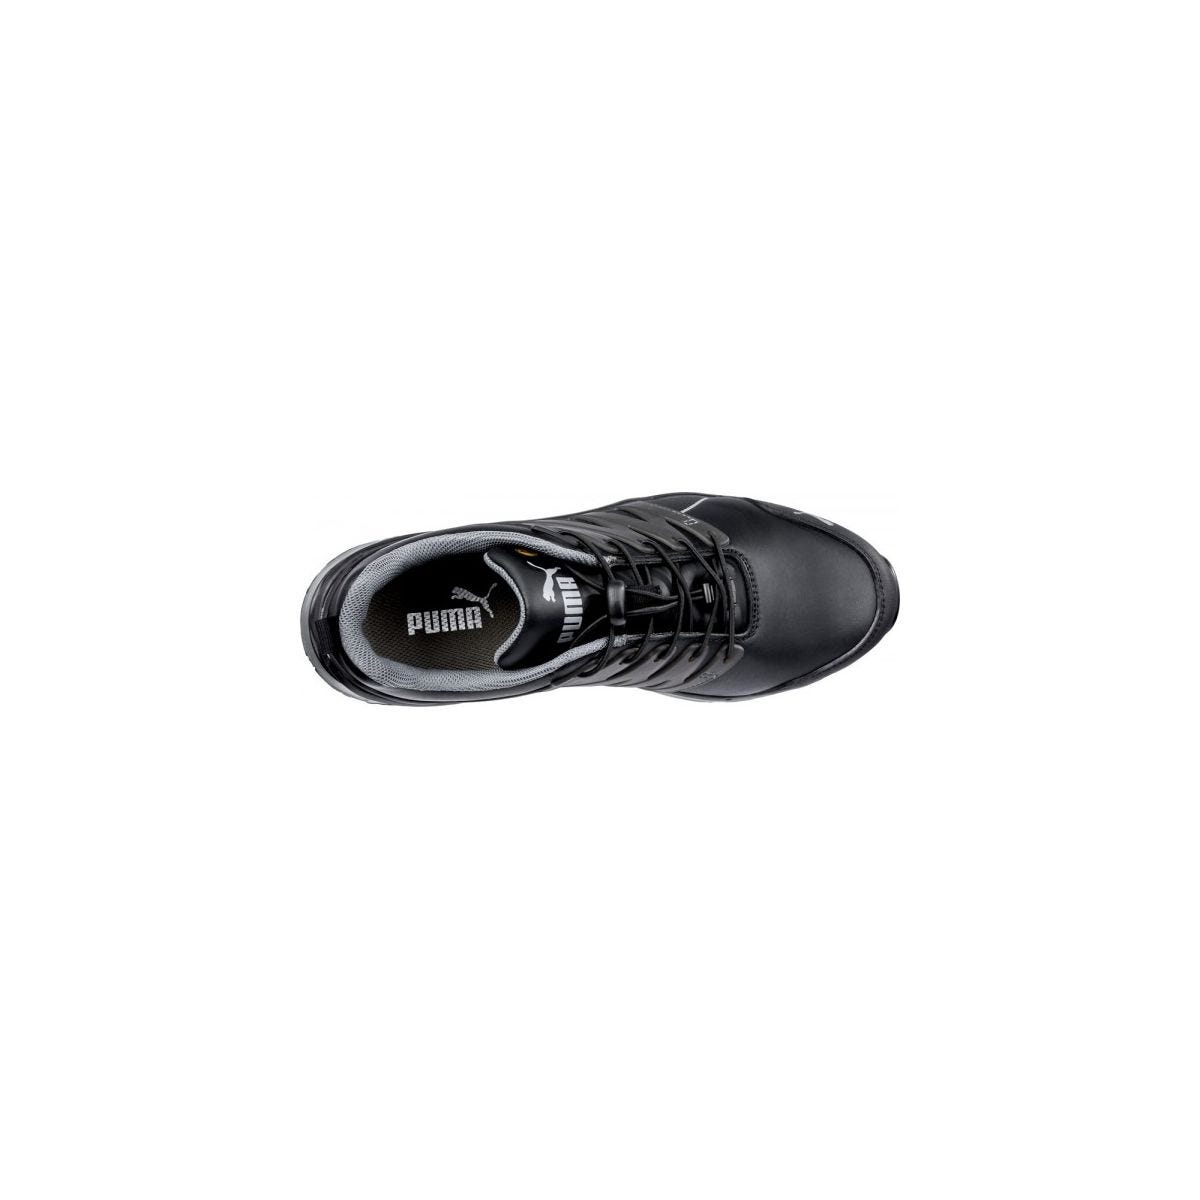 Chaussures de sécurité Velocity 2.0 Noir Low S3 - Puma - Taille 47 3